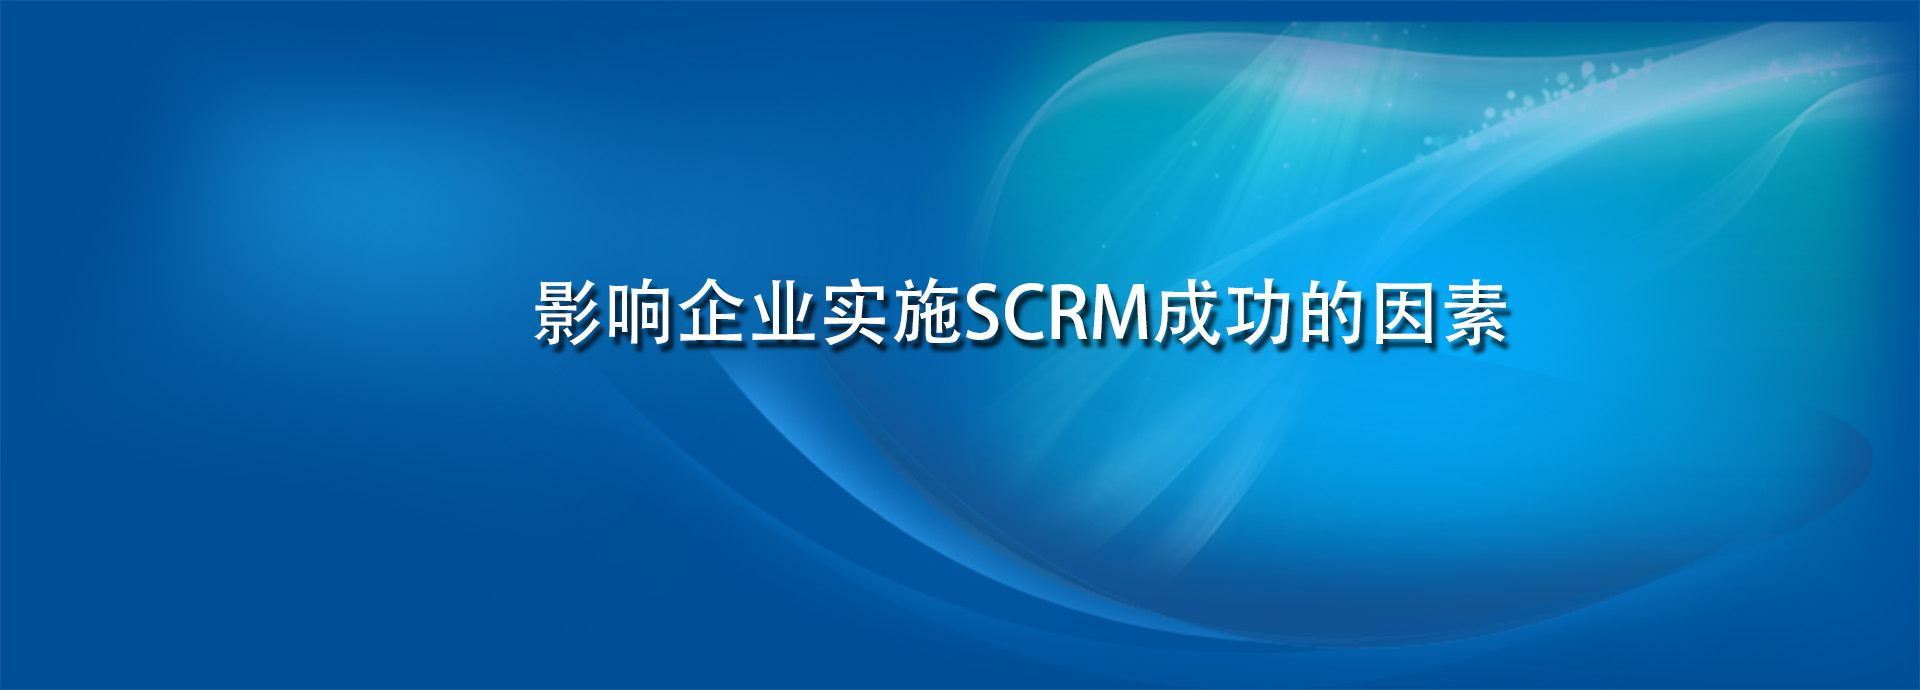 影响企业实施SCRM成功的因素